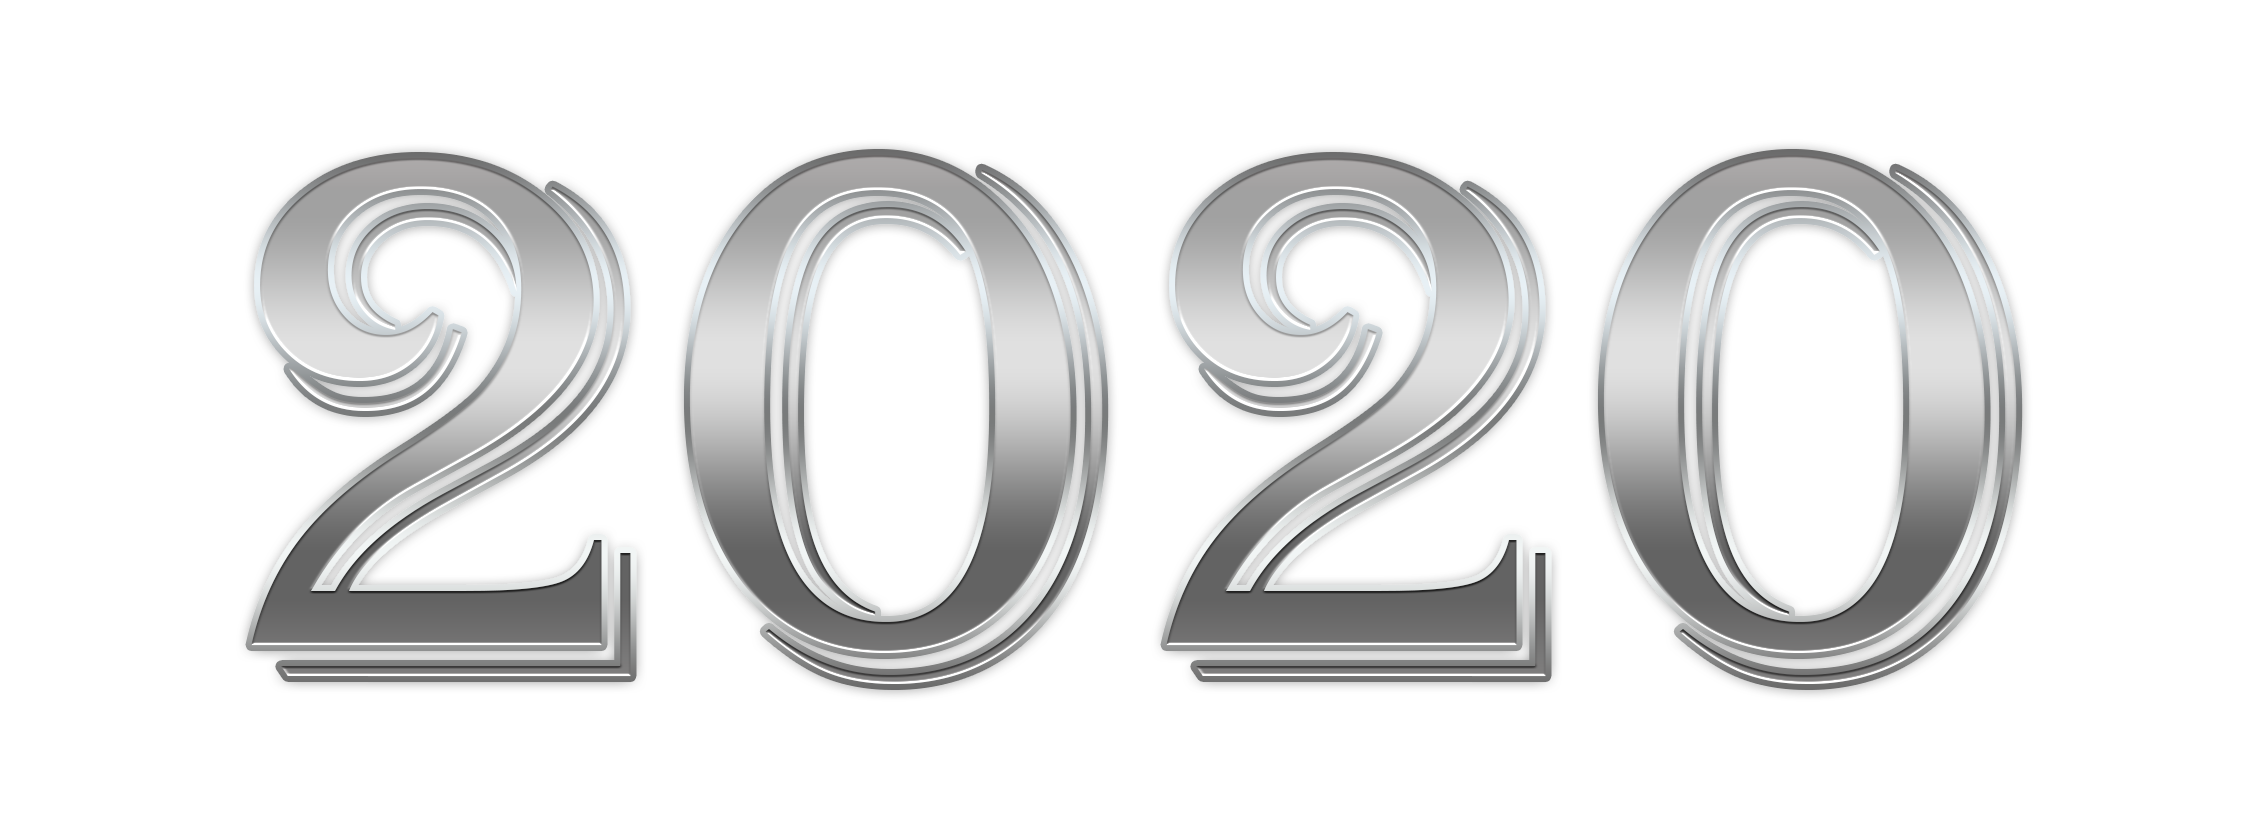 2020 Год на прозрачном фоне. 2020 Красивым шрифтом. Цифры на прозрачном фоне для фотошопа. 2020 Надпись. Логотип 2024 на прозрачном фоне